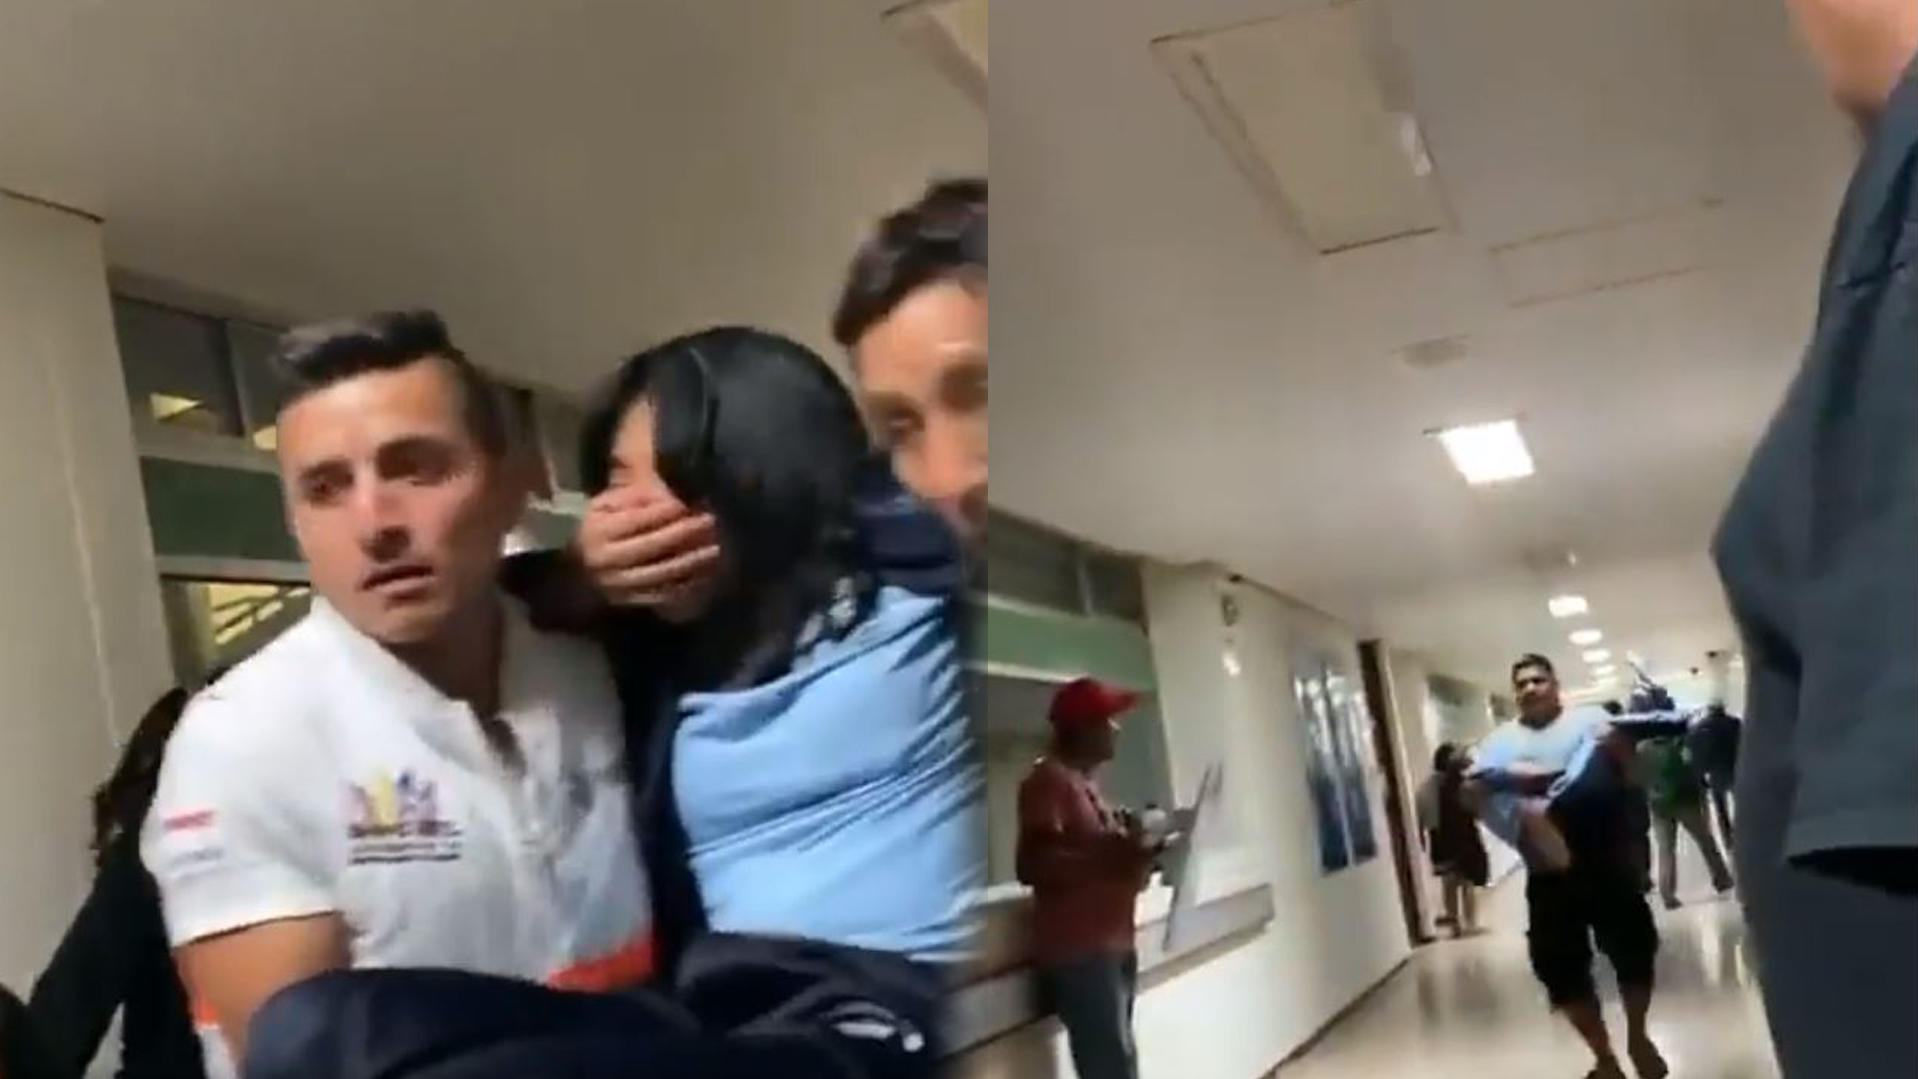 Schülerinnen und Schüler, die nach einem Vorfall von Massenvergiftung im südmexikanischen Chiapo nicht mehr eigenständig laufen können, werden zu den Krankenwagen getragen. Twitter-Video zeigen chaotische Szenen.